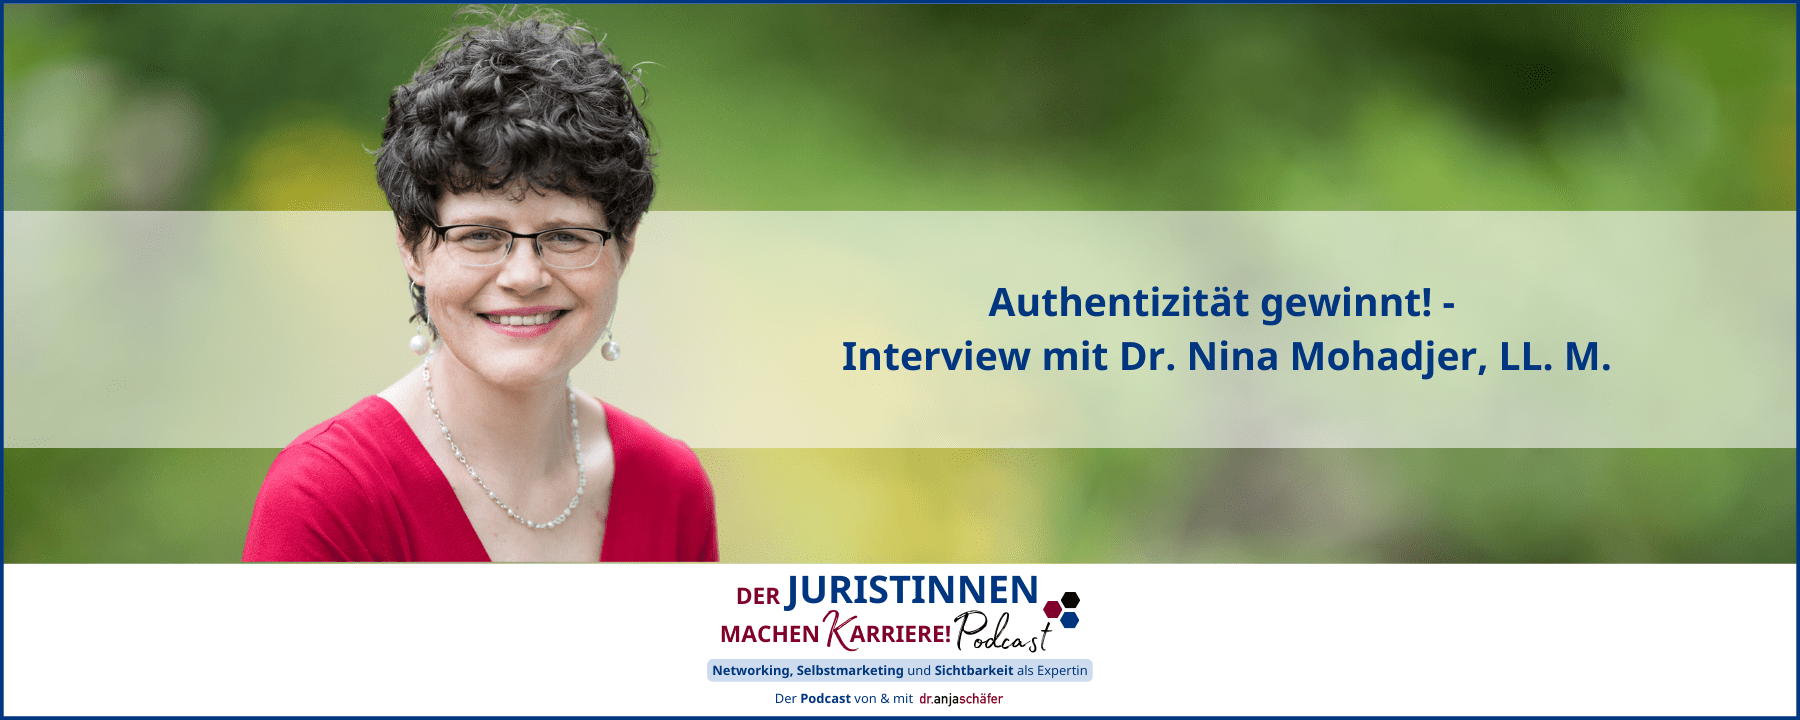 Authentizität gewinnt! - Interview mit Dr. Nina Mohadjer, LL. M.